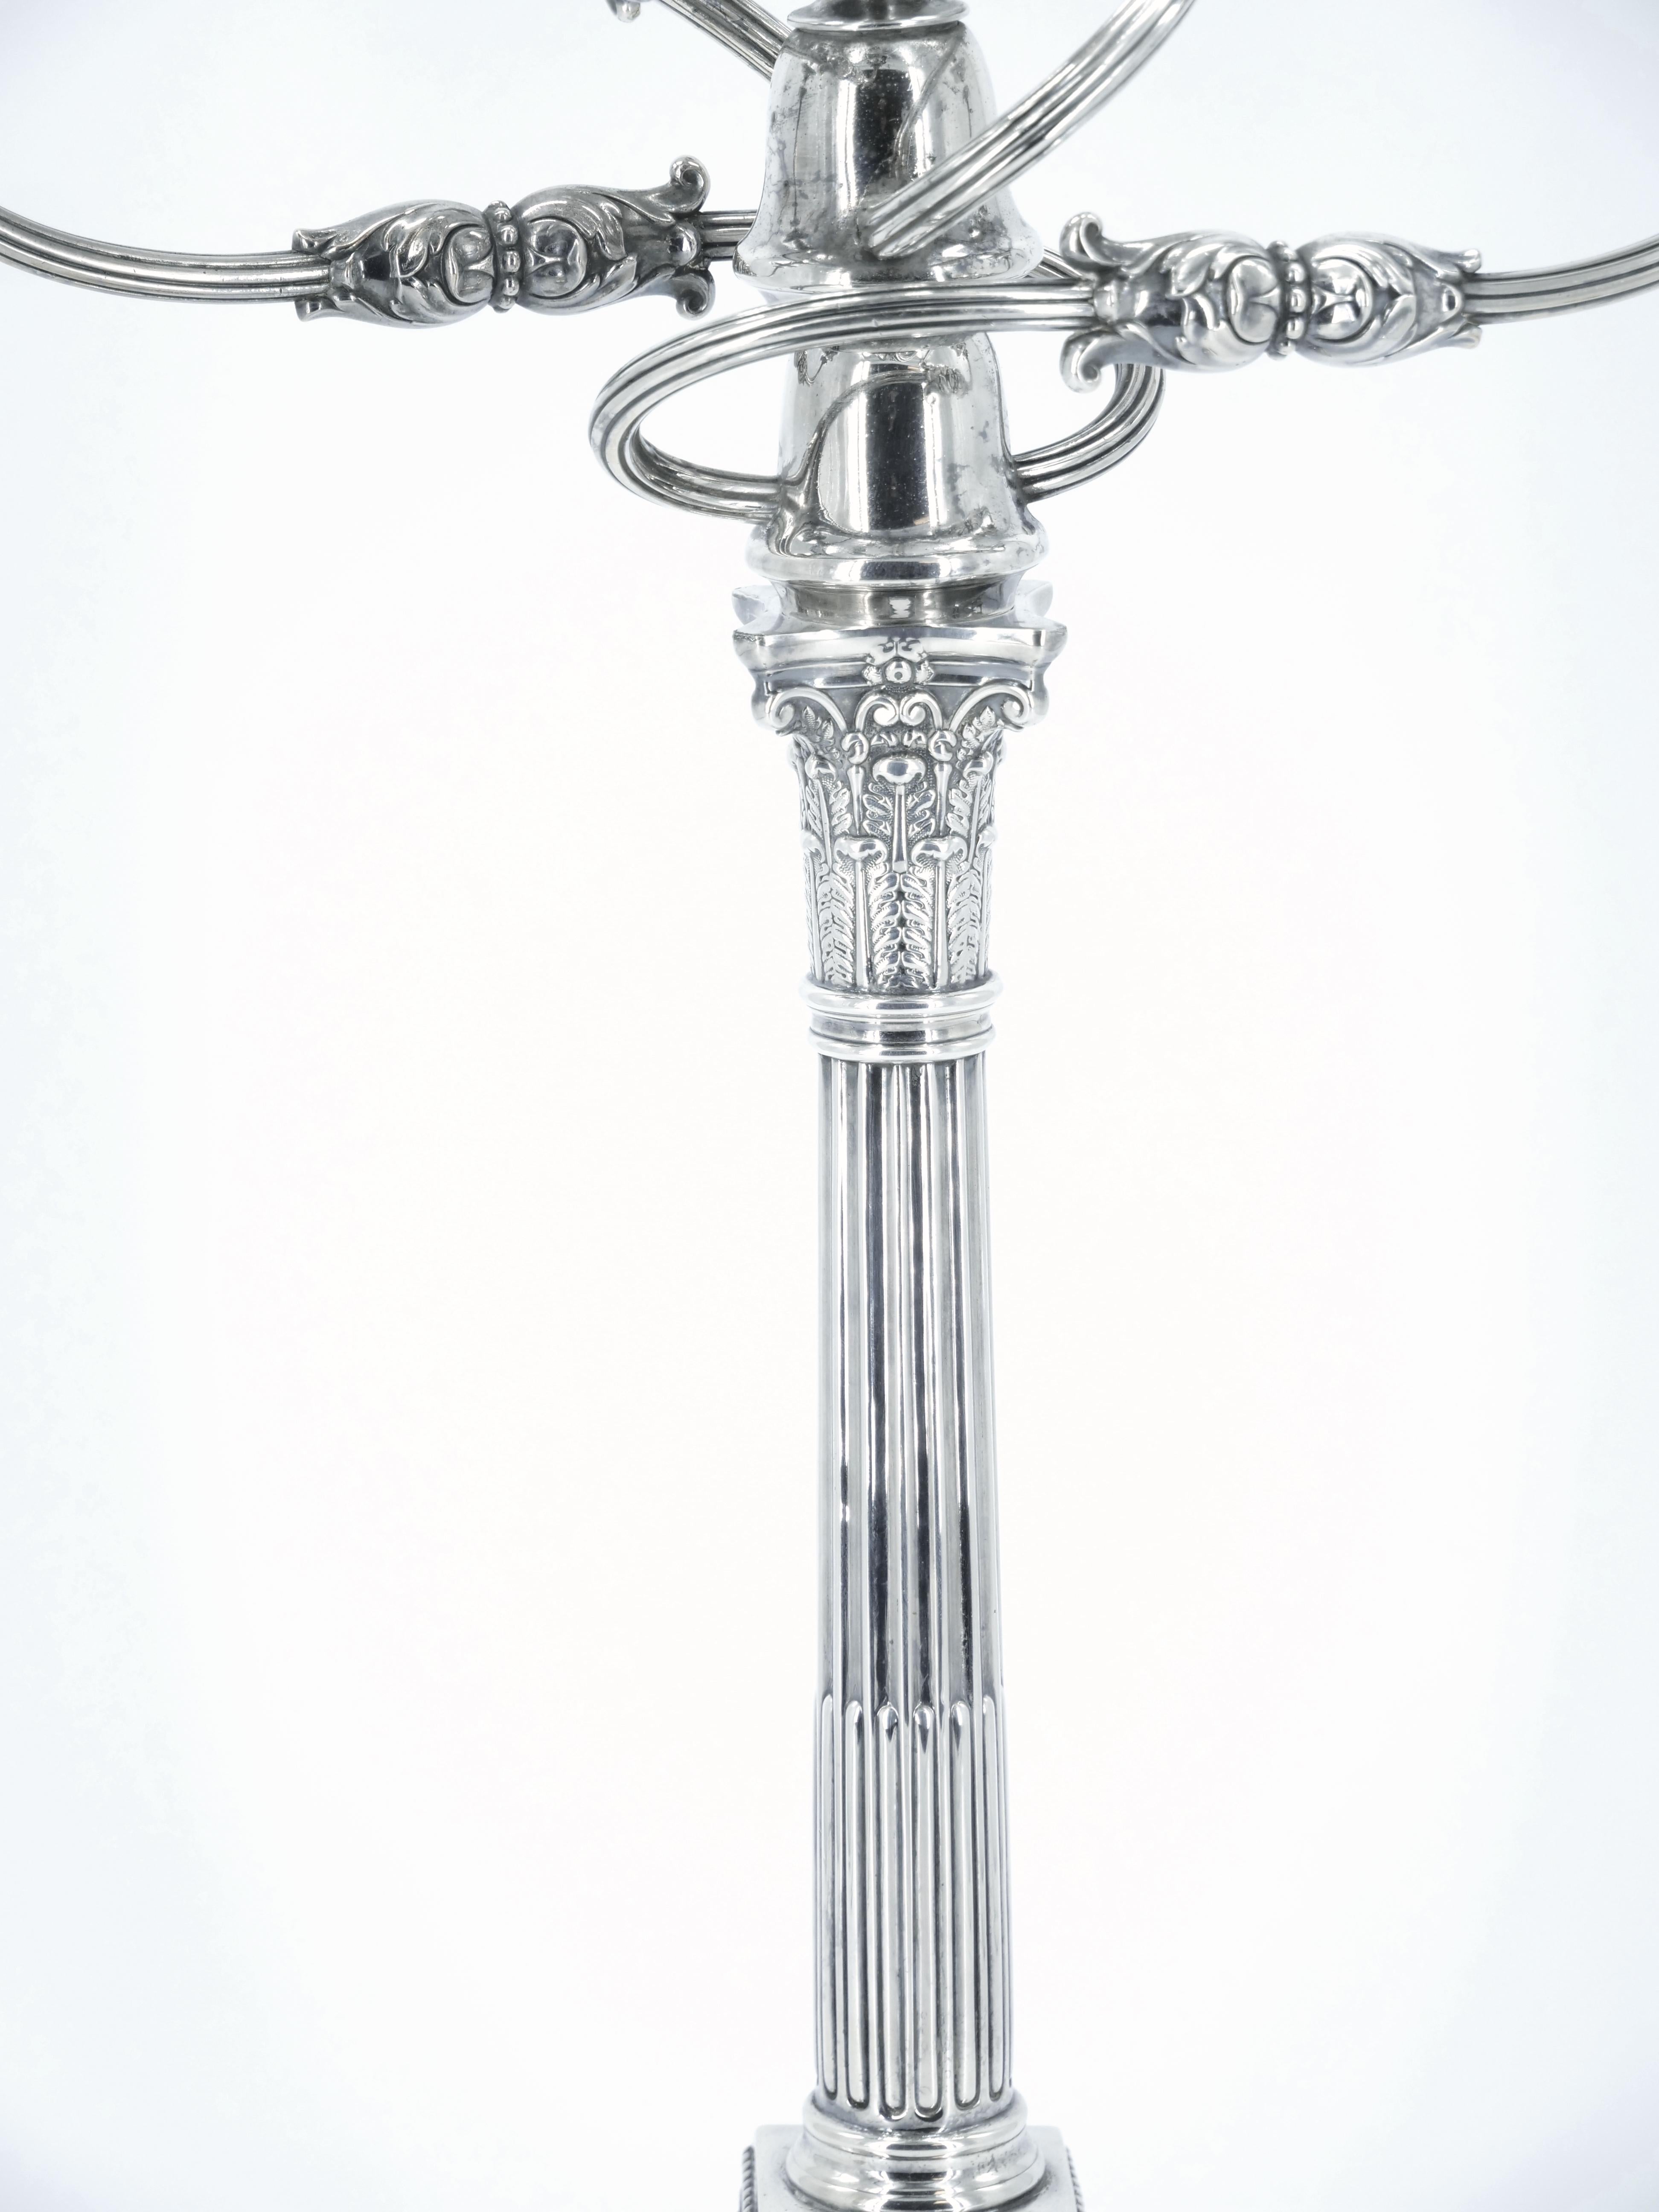 Exceptionnel candélabre à cinq lumières en métal argenté anglais du XIXe siècle, réalisé par James Dixon, avec des motifs finement repoussés et ciselés, une colonne cannelée et des chandeliers soutenus par des chapiteaux de style corinthien.  Se